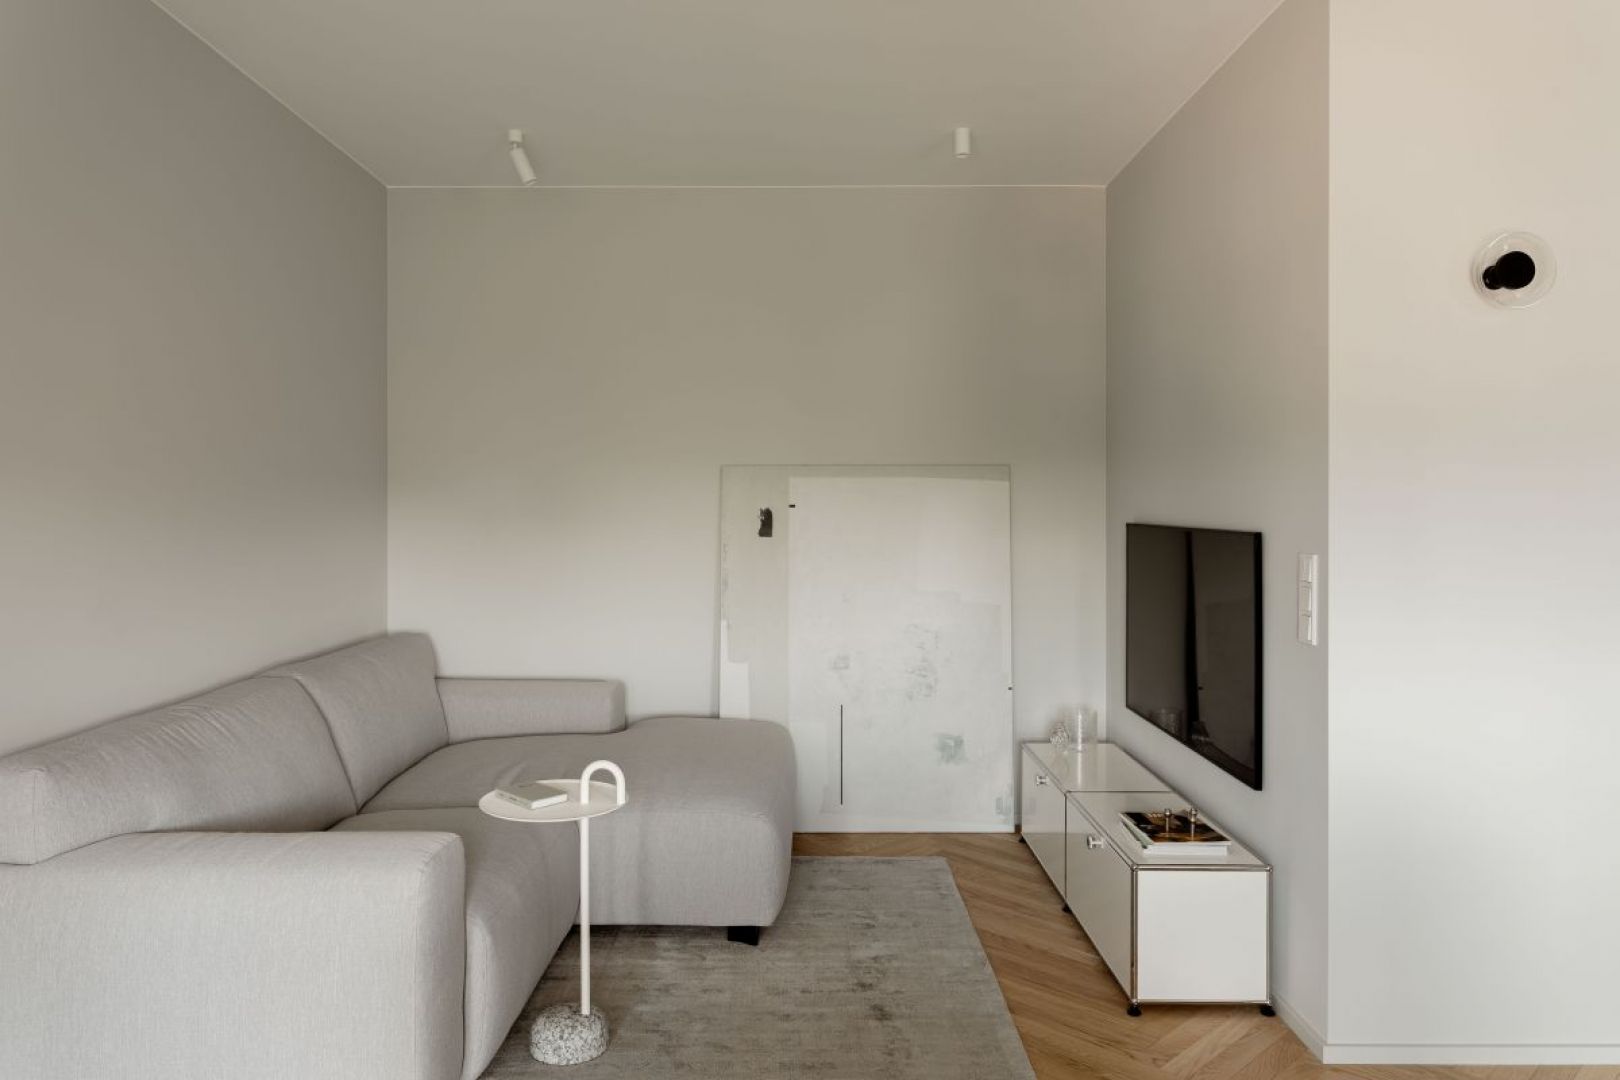 W strefie wypoczynkowej znajduje się jasnoszara sofa marki MTI Furninova z białym stolikiem marki Hay. Projekt wnętrza: 3XEL Architekci. Fot. PORA studio